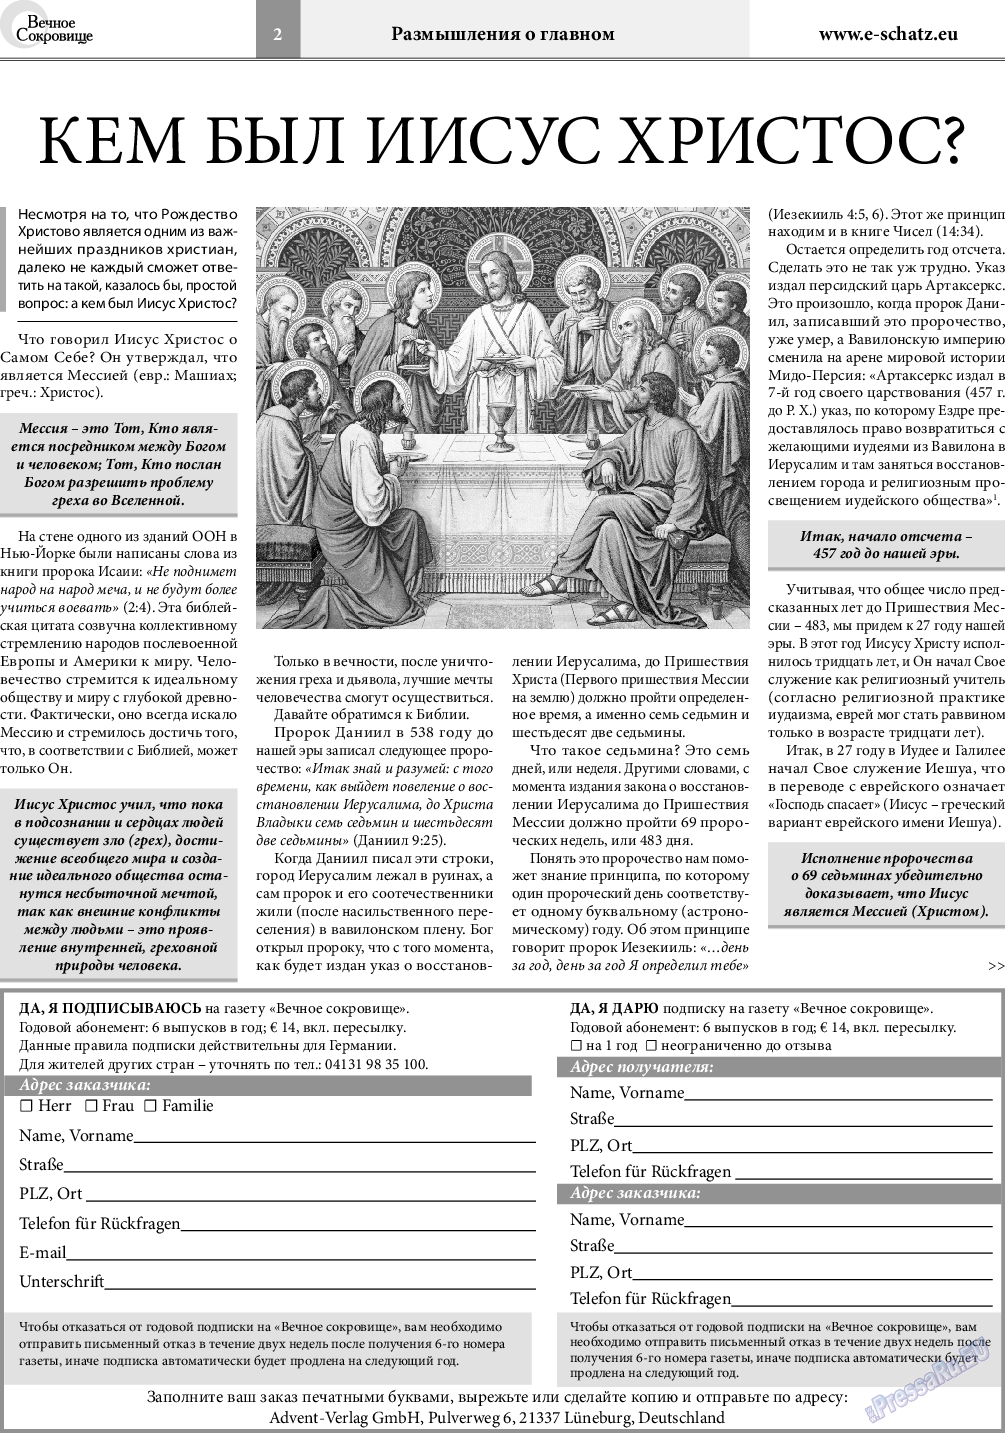 Вечное сокровище (газета). 2018 год, номер 6, стр. 2